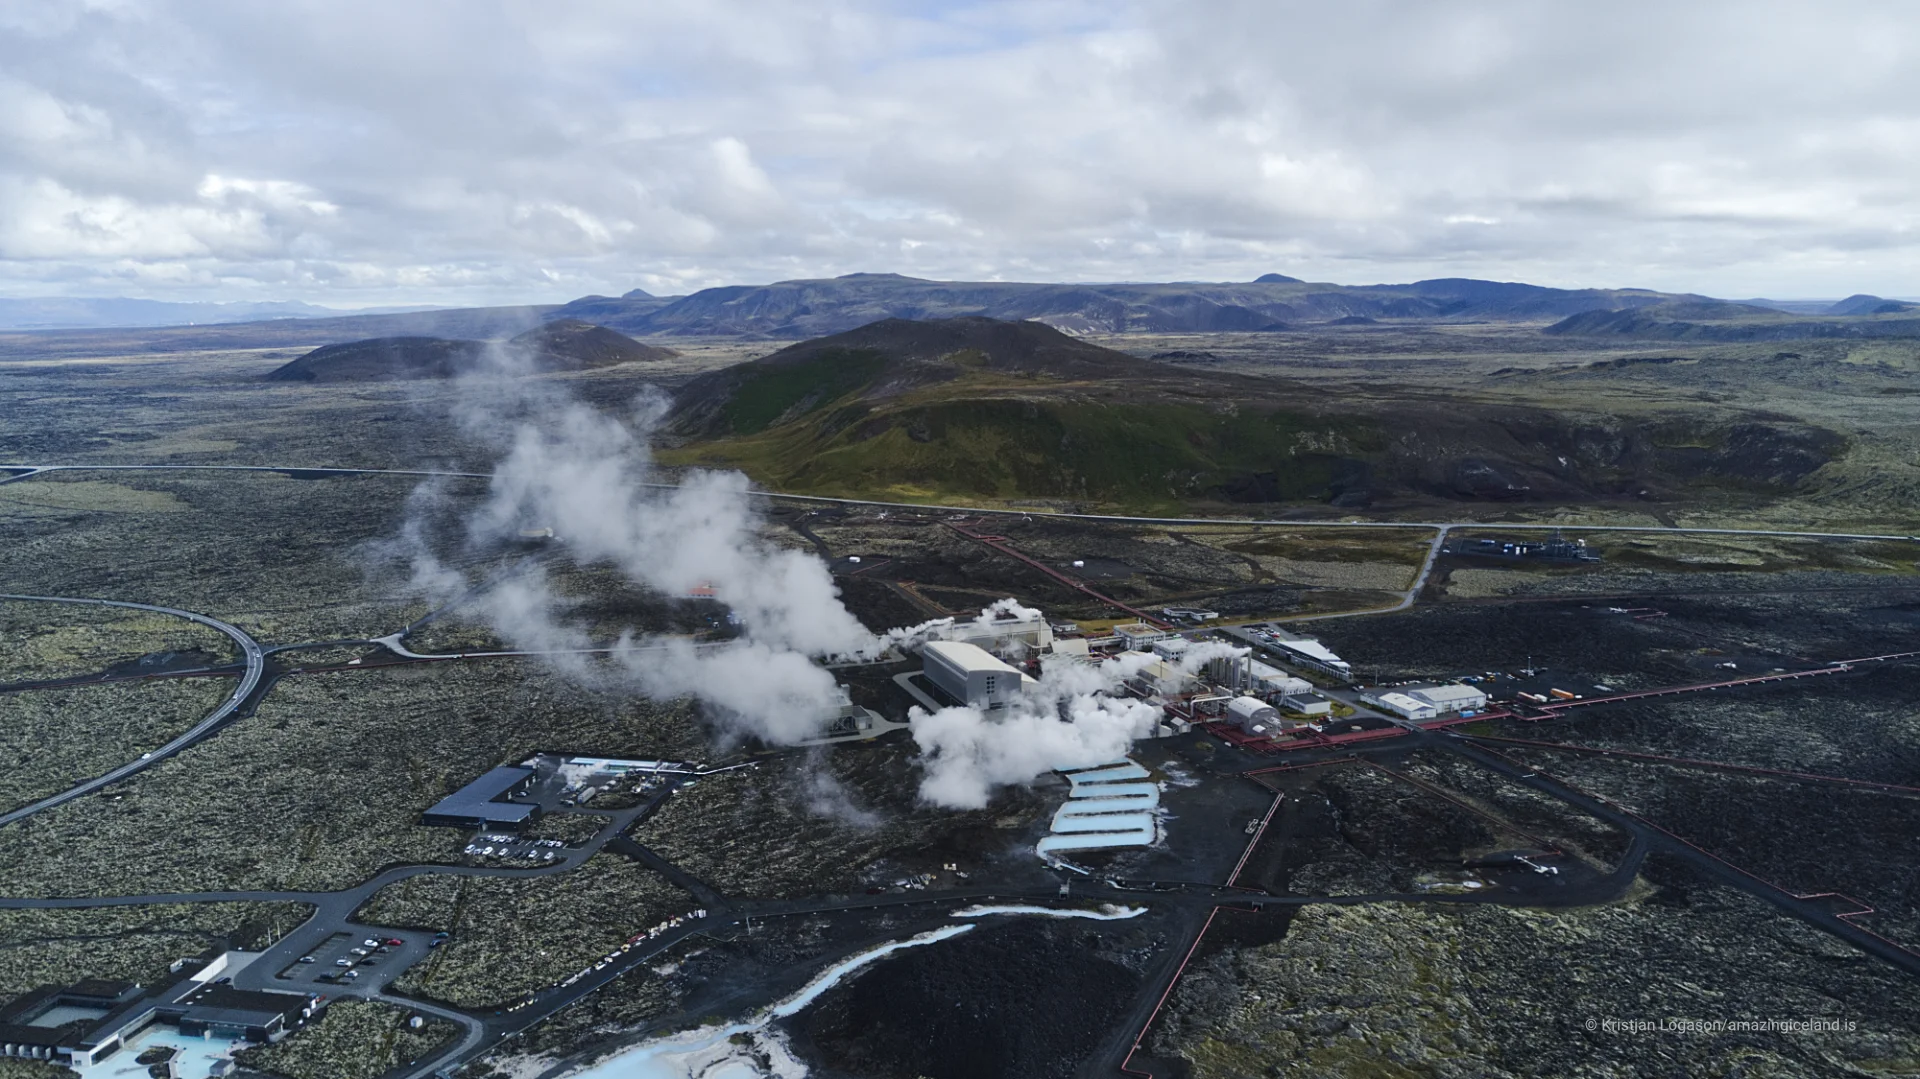 Aerial view of Svartsengi geothermal power plant